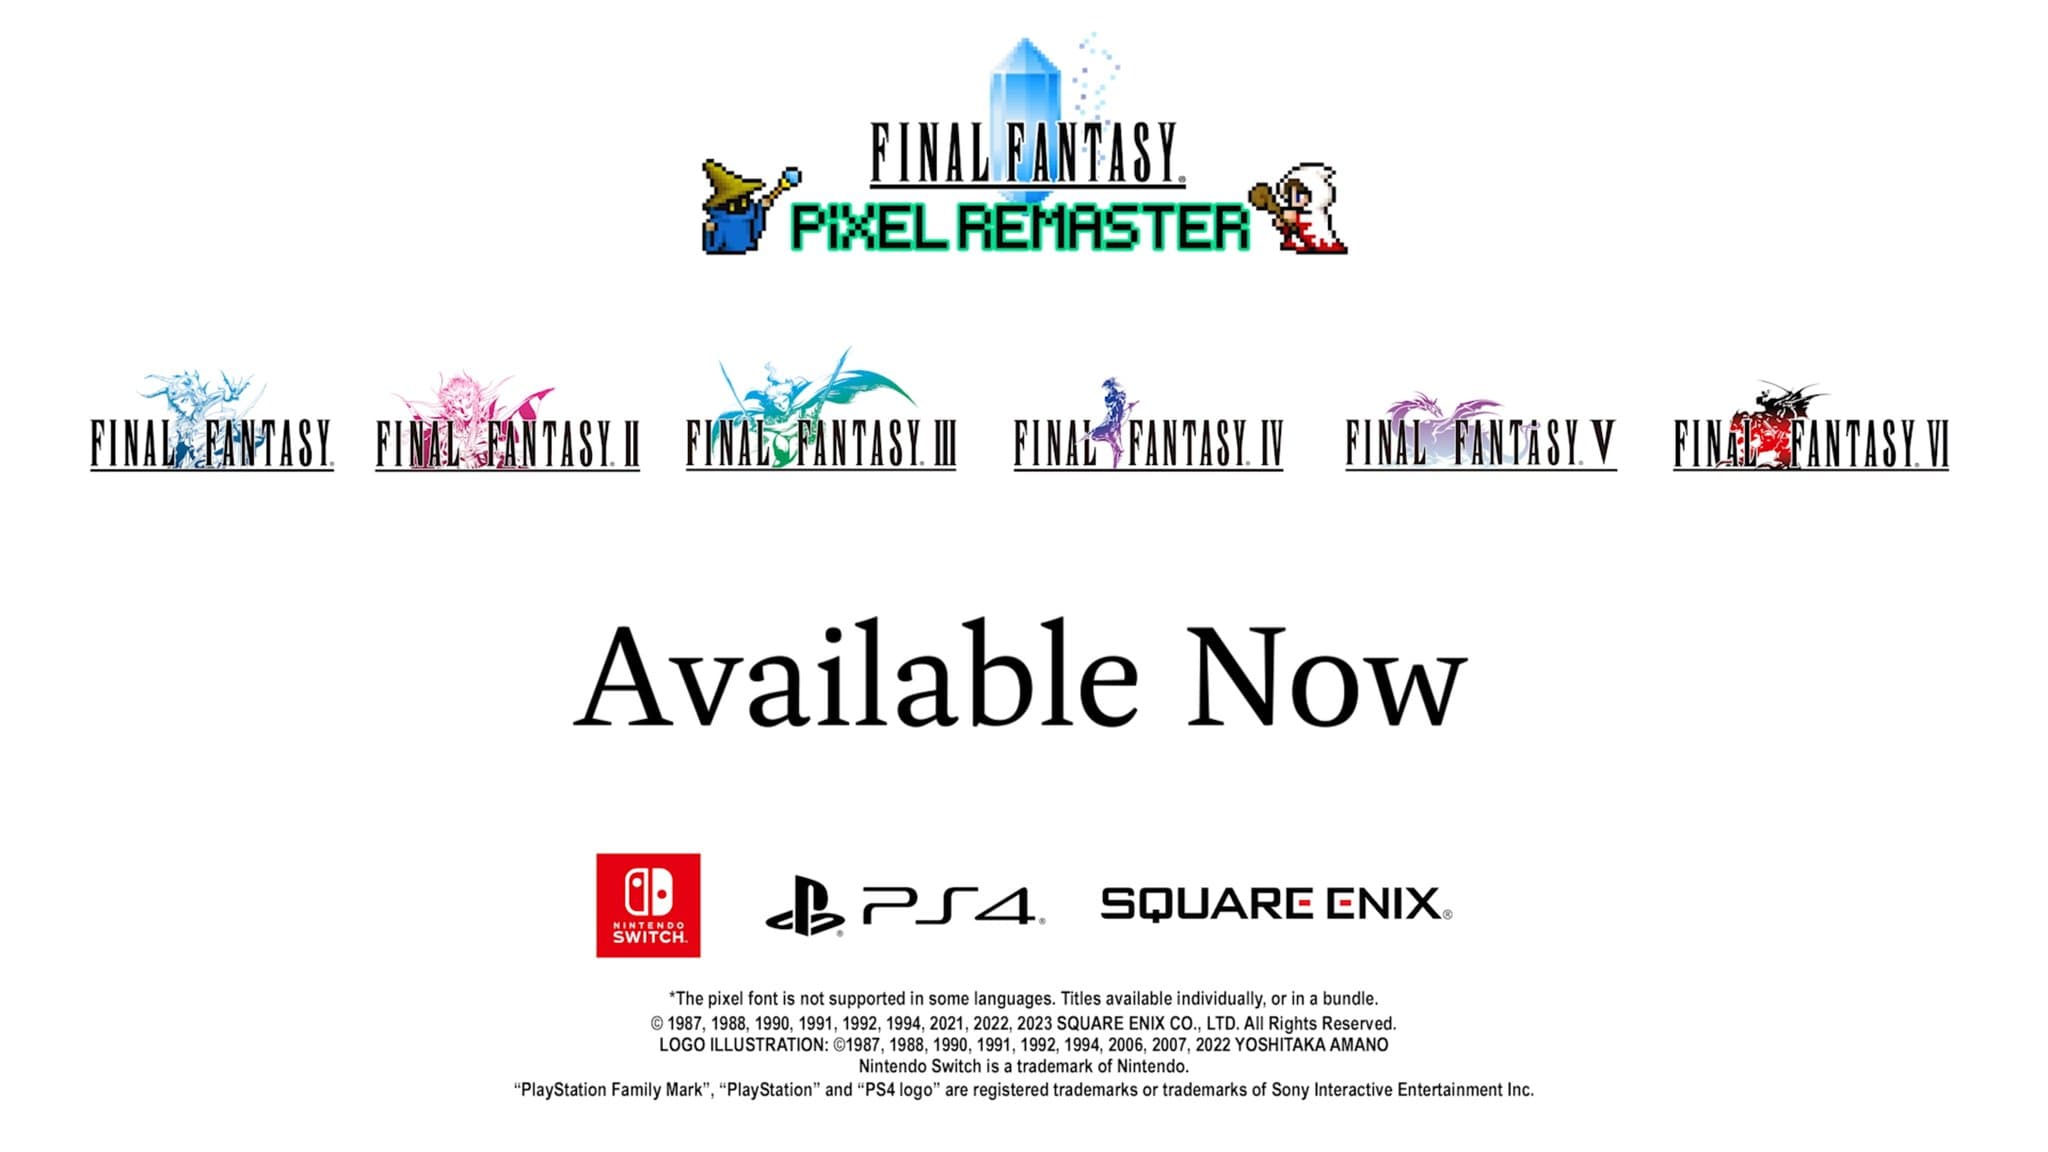 Speel vanaf nu de eerste zes verhalen op consoles met de Final Fantasy Pixel Remaster